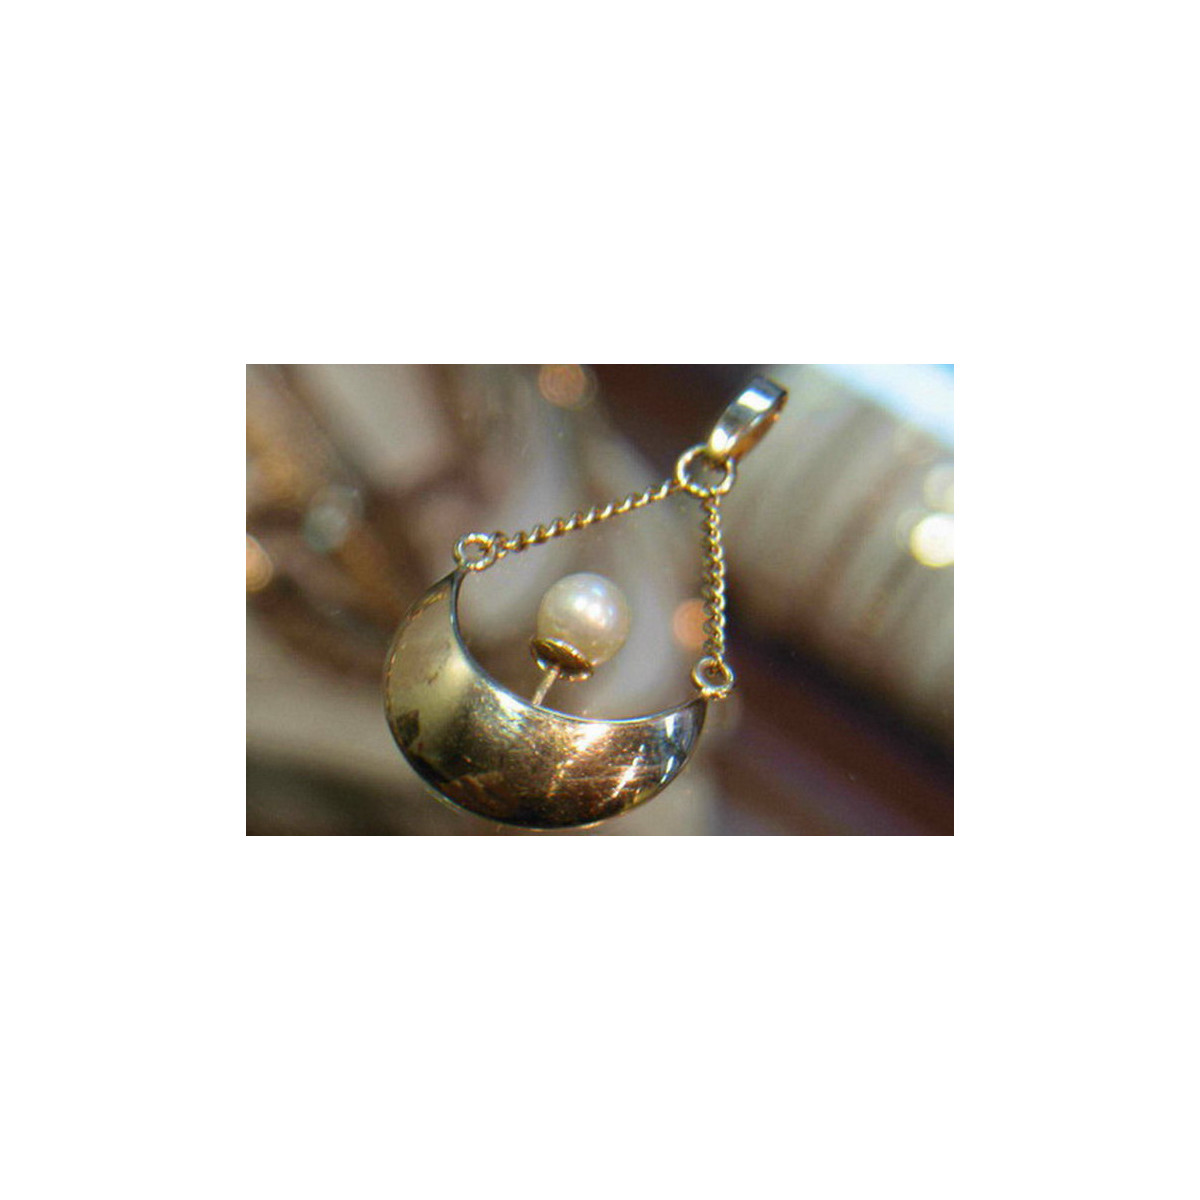 "Original Vintage 14K Rose Gold Pendant with Elegant Pearl" vppr003